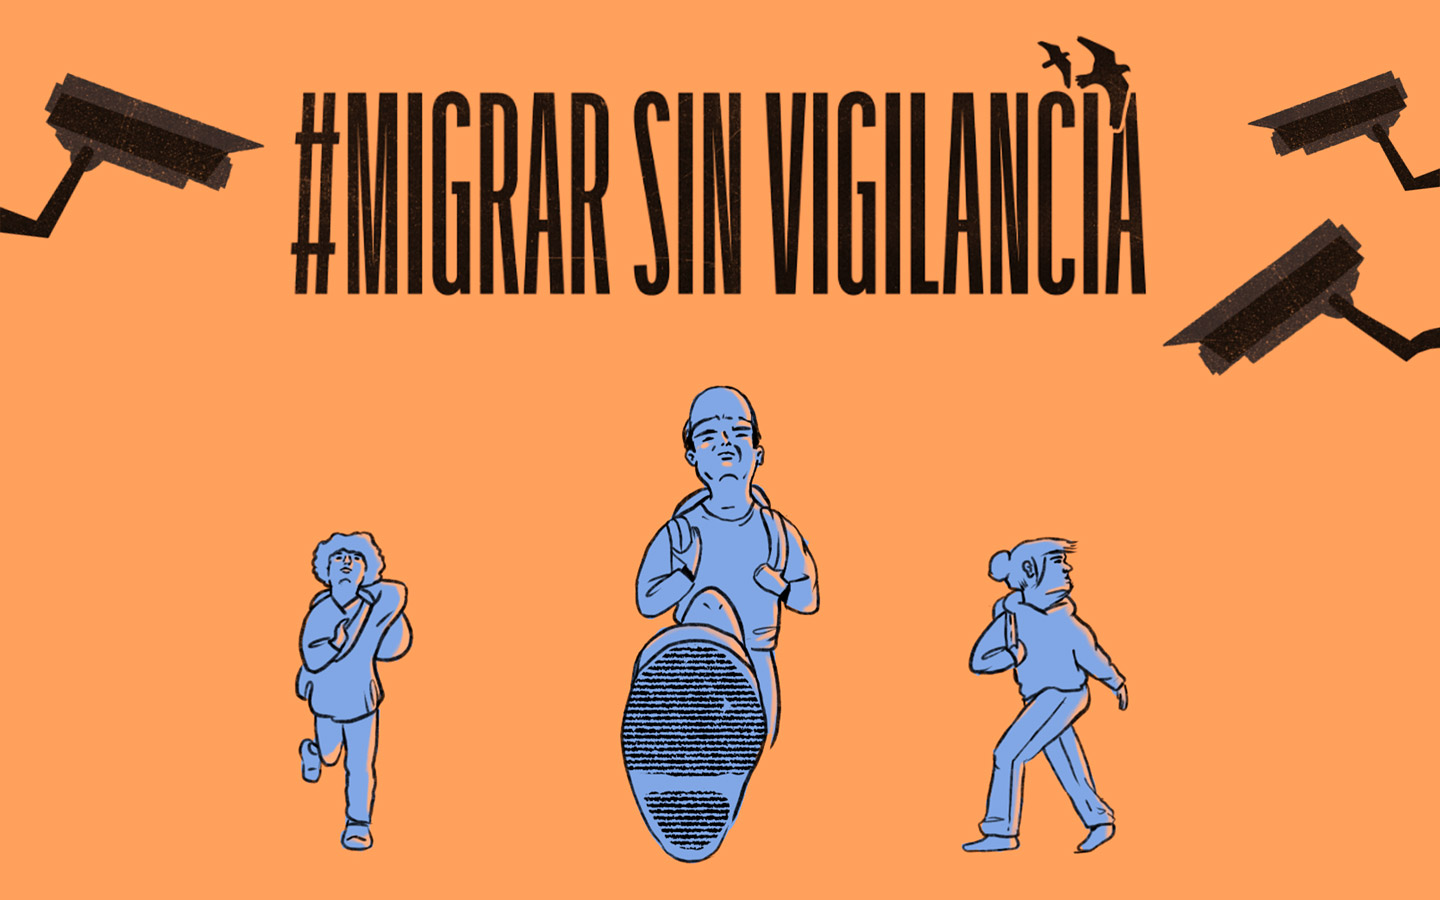 R3D forma parte de la Coalición Latinoamericana #MigrarSinVigilancia junto a decenas de organizaciones de la sociedad civil.